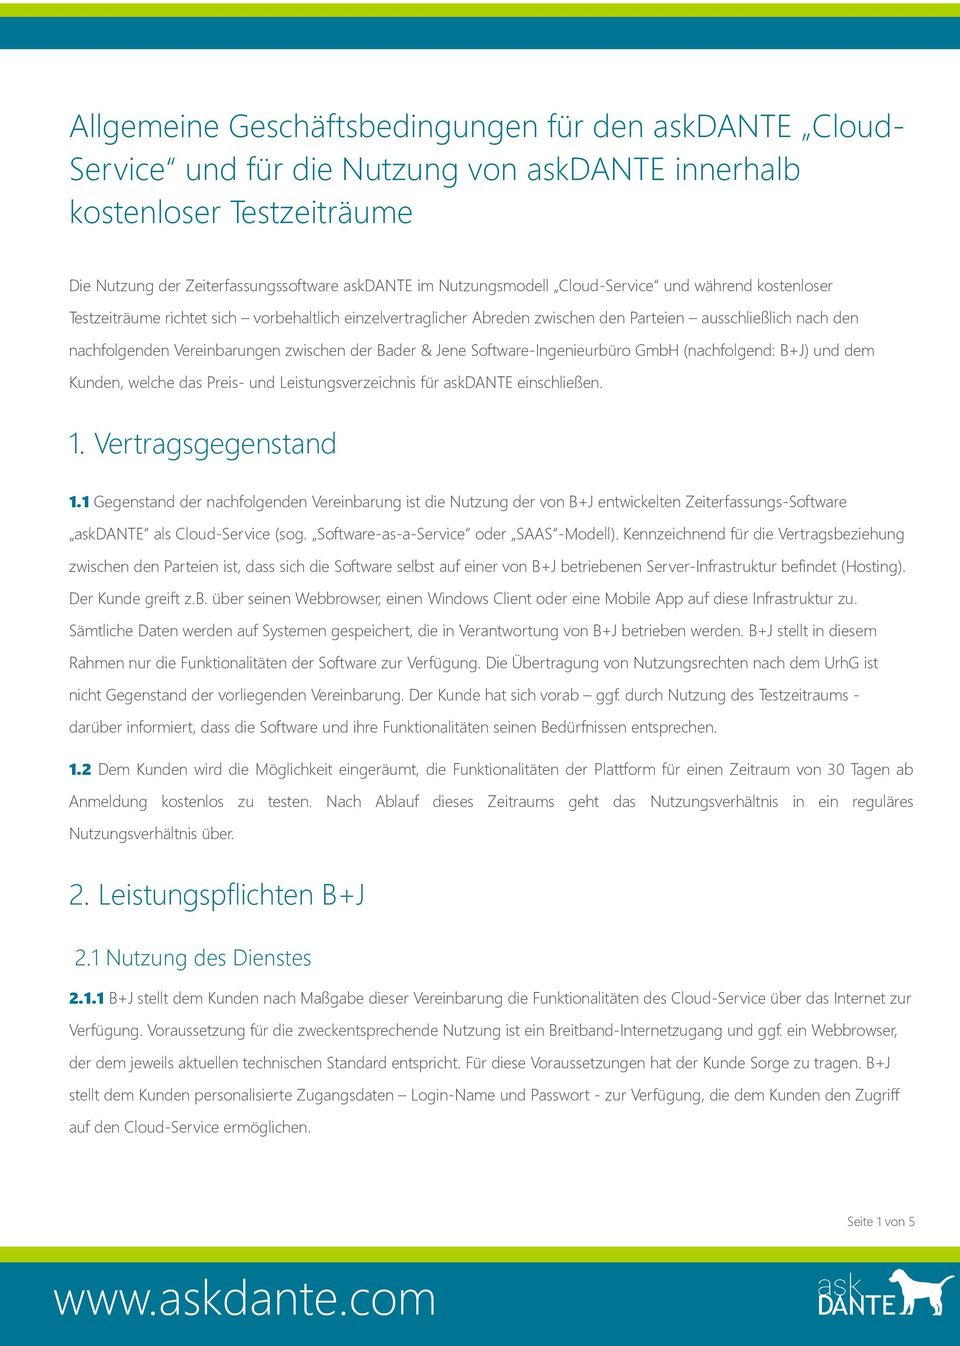 Bader & Jene Software-Ingenieurbüro GmbH (nachfolgend: B+J) und dem Kunden, welche das Preis- und Leistungsverzeichnis für askdante einschließen. 1. Vertragsgegenstand 1.